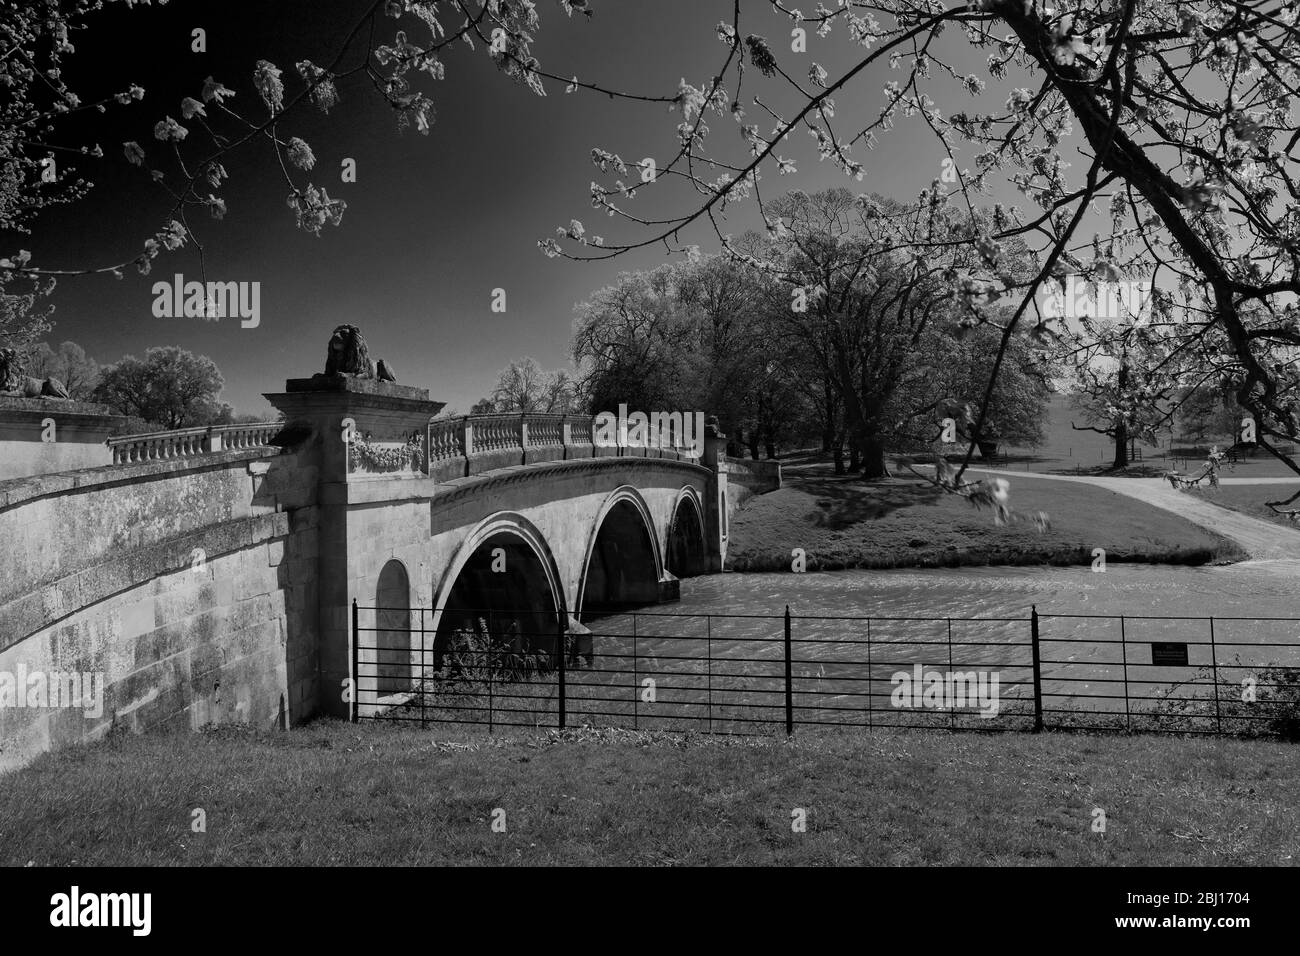 Le Pont du Lion, la maison de Burghley, la maison élisabéthaine, située à la frontière de Cambridgeshire et du Lincolnshire, en Angleterre. Banque D'Images